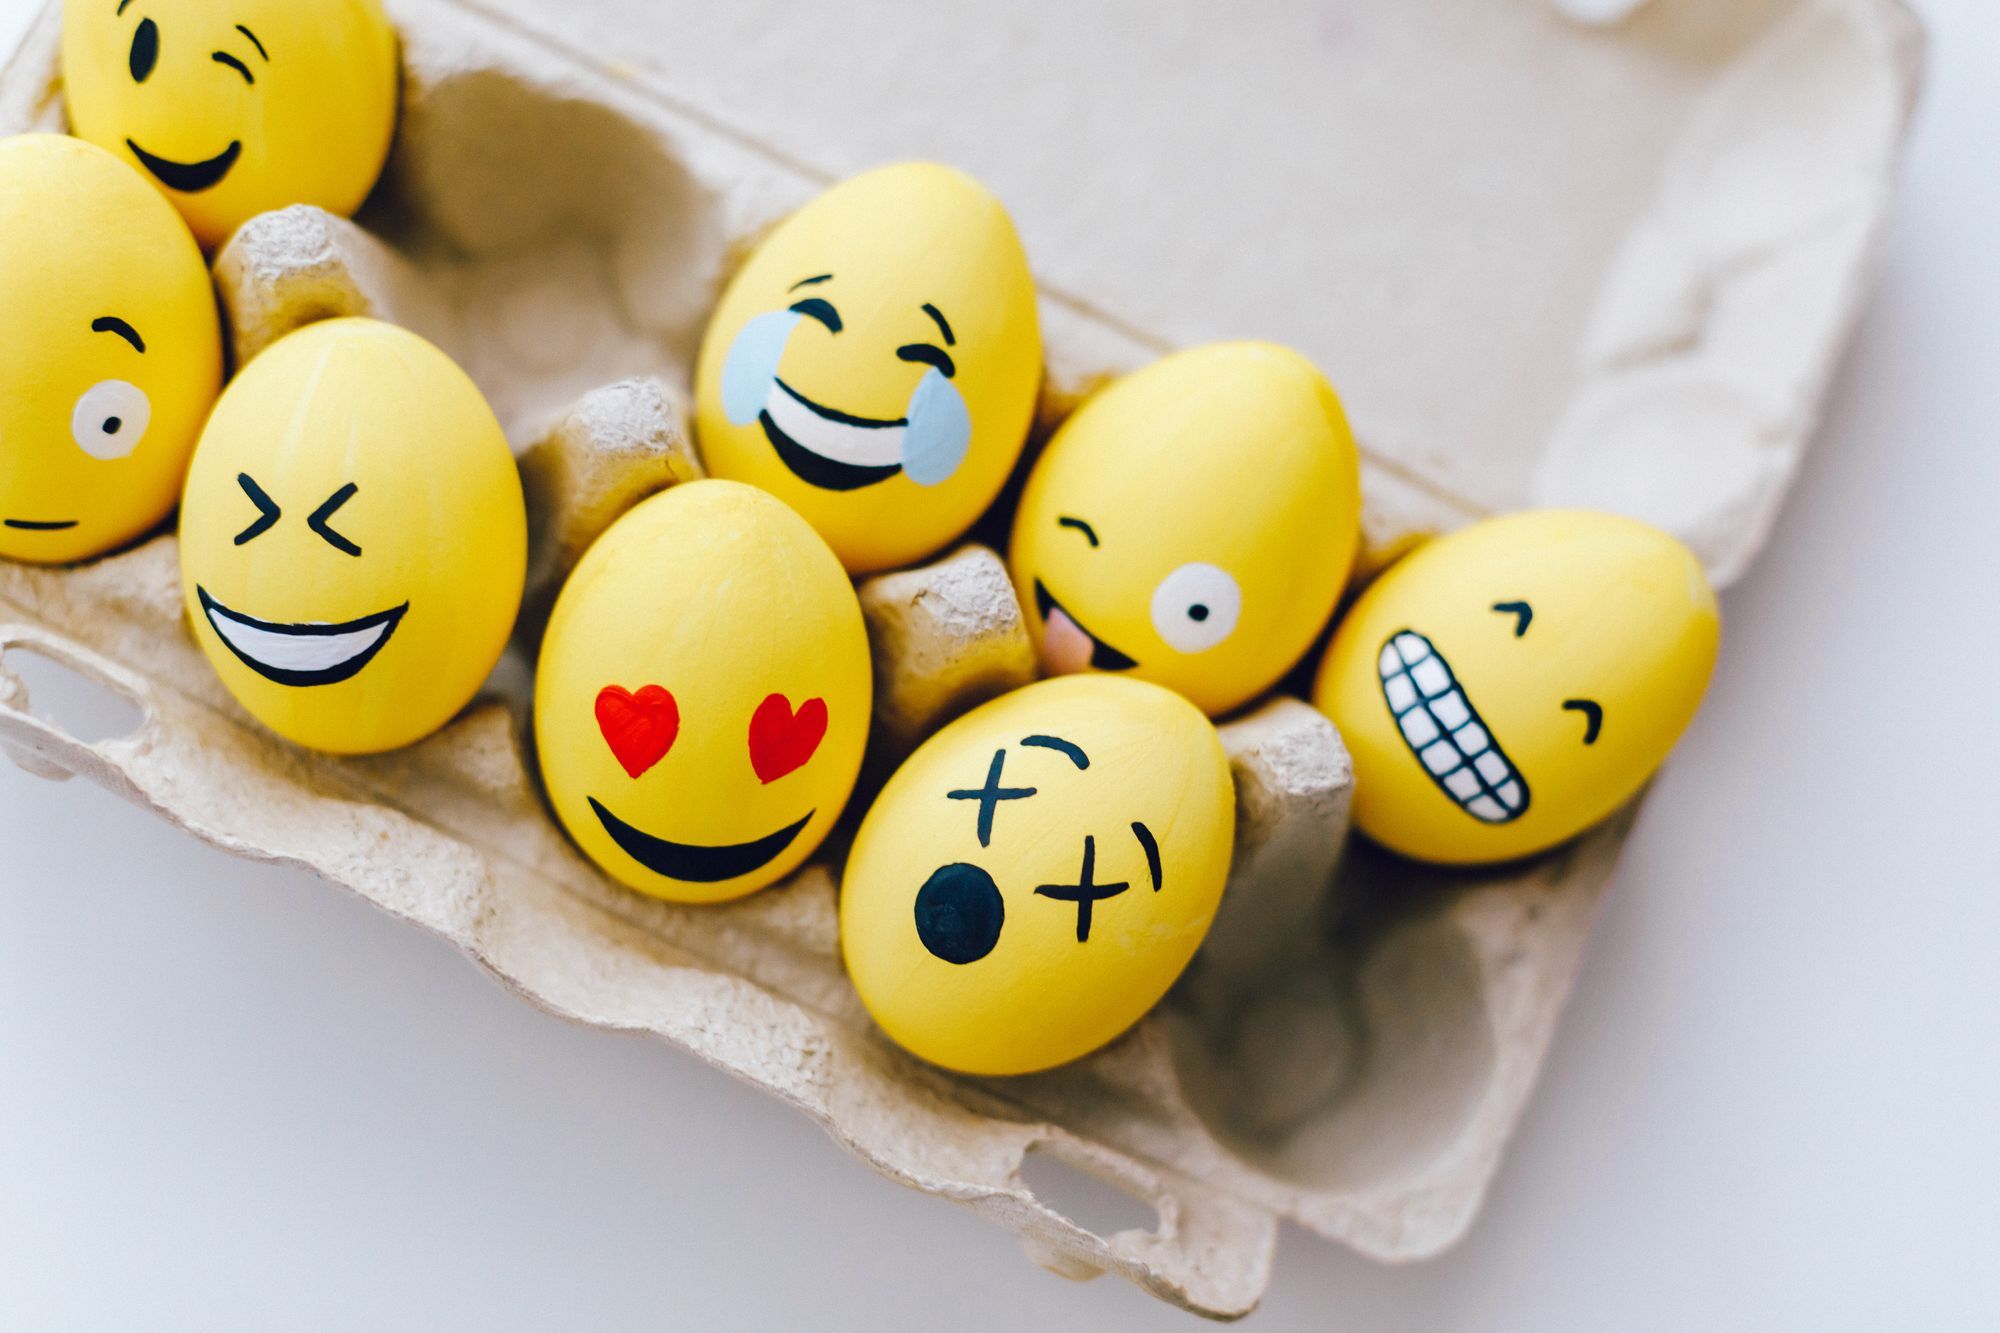 How to Use RegEx to Match Emoji – Discord Emotes Regular Expression Tutorial